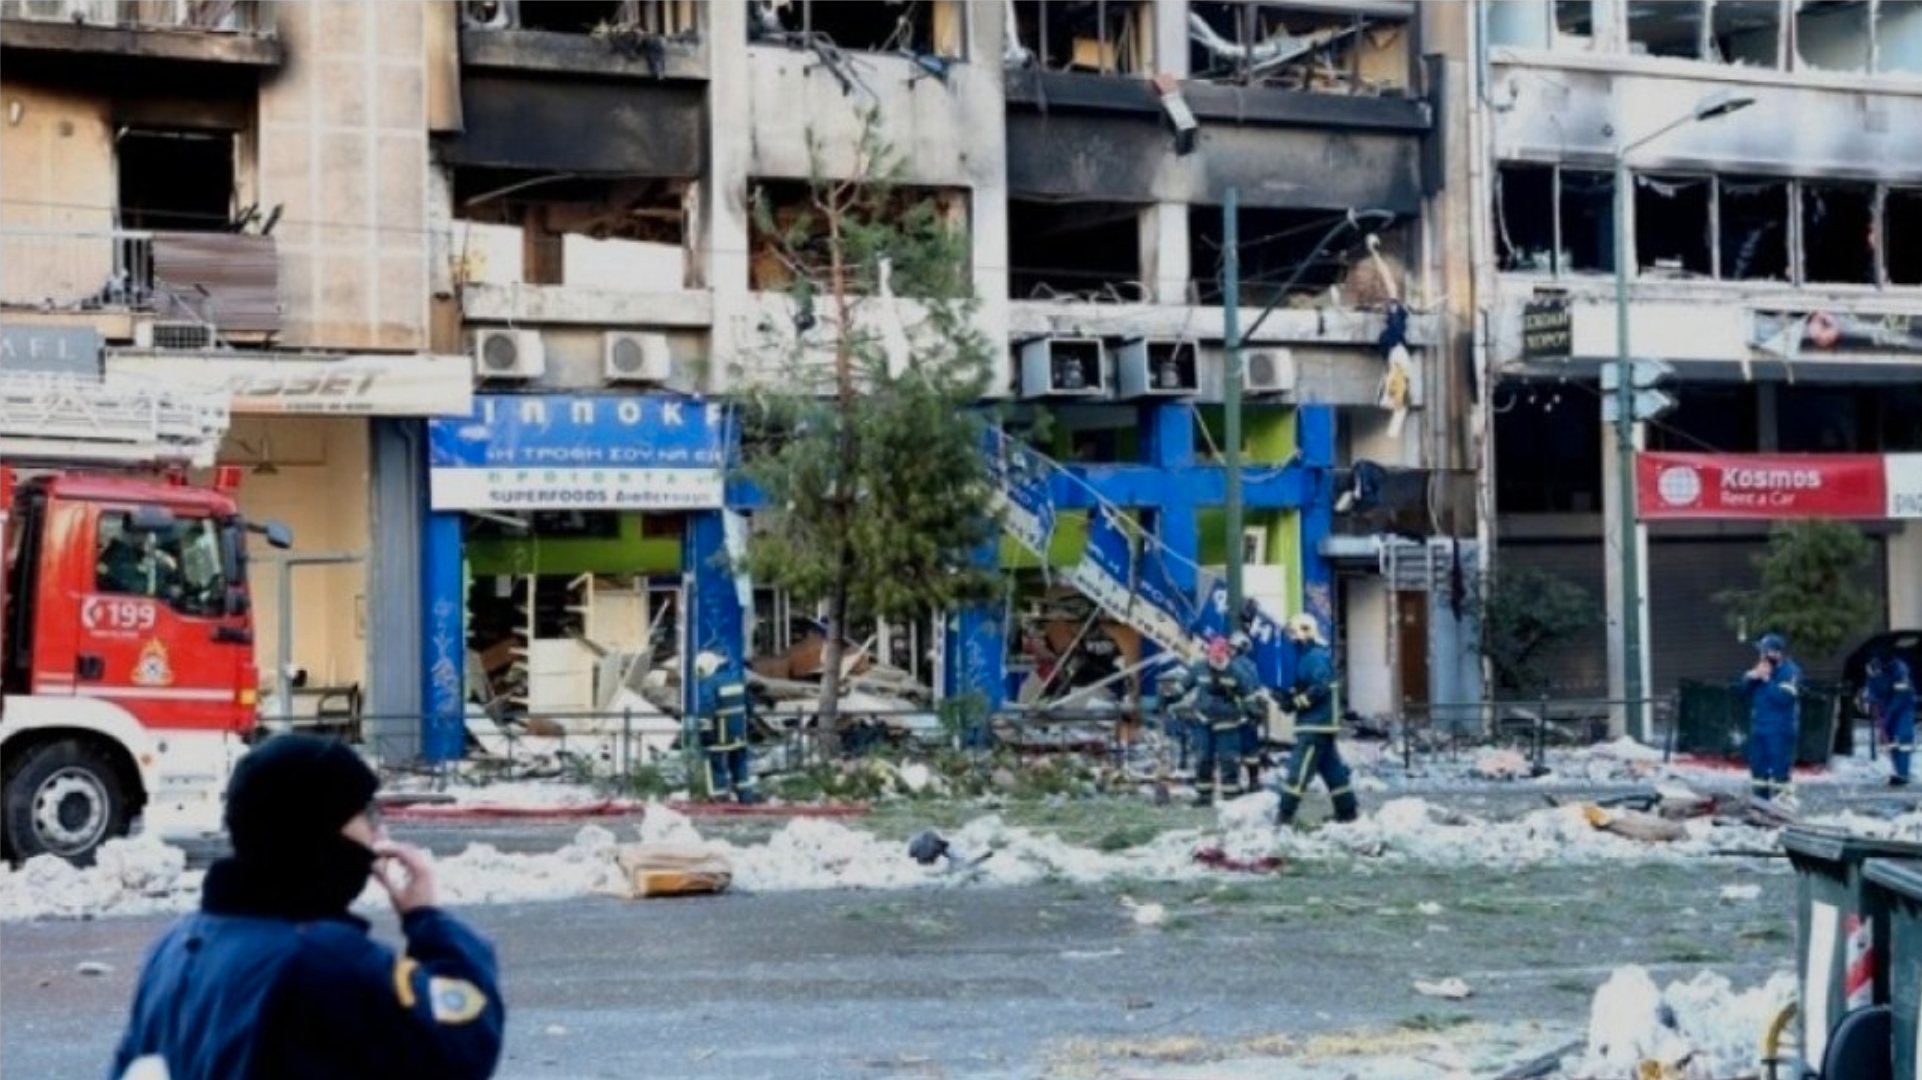 A explosão aconteceu esta quarta-feira, pelas 6h30, num edifício de escritórios no centro de Atenas